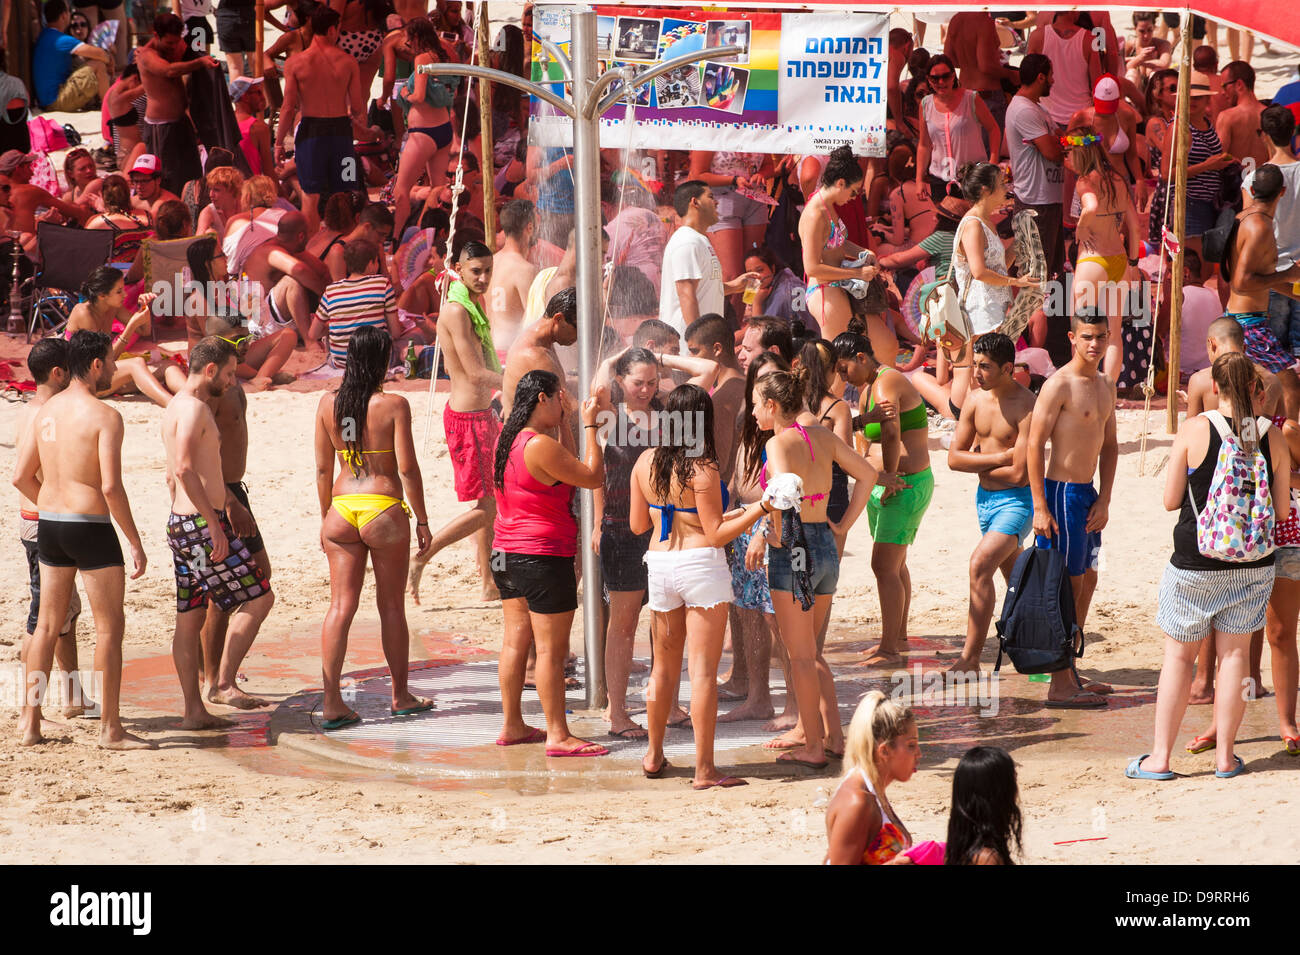 Israel Tel Aviv Gay Pride Day feiern Menschenmassen versammeln sich auf  Gordon Strand von Marina für konzert party Abkühlung unter der Dusche  Stockfotografie - Alamy